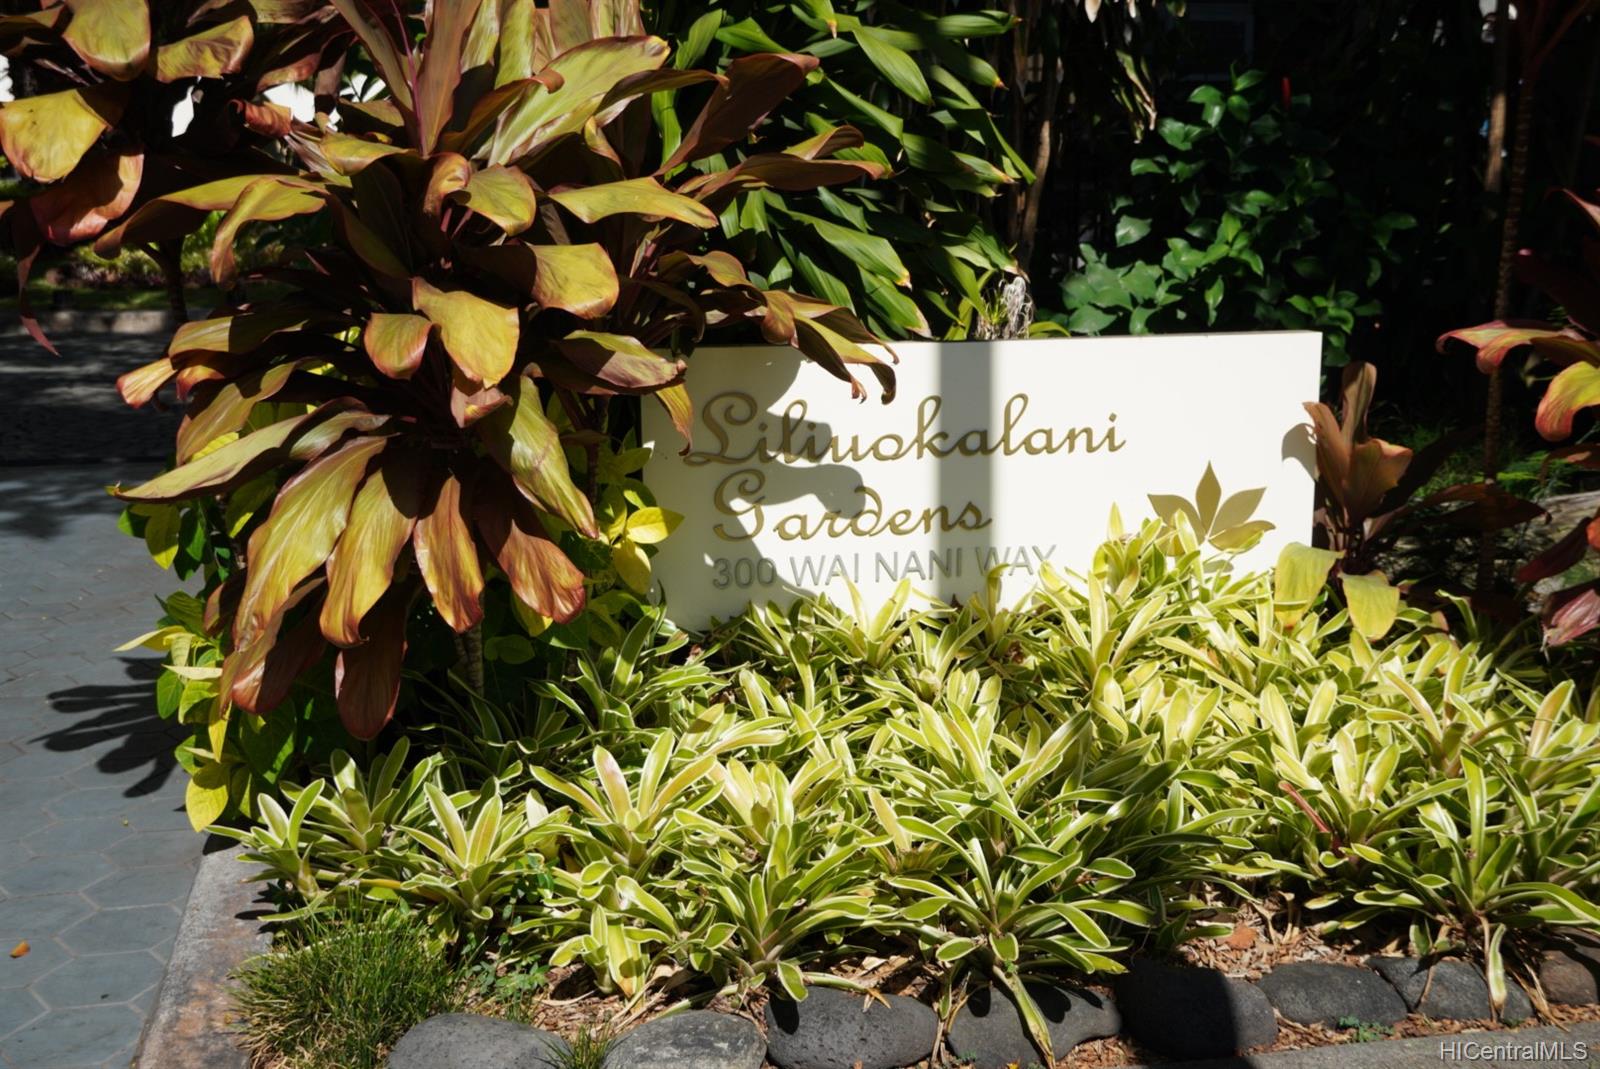 Liliuokalani Gardens 300 Wai Nani Way #I, Honolulu, HI 96815